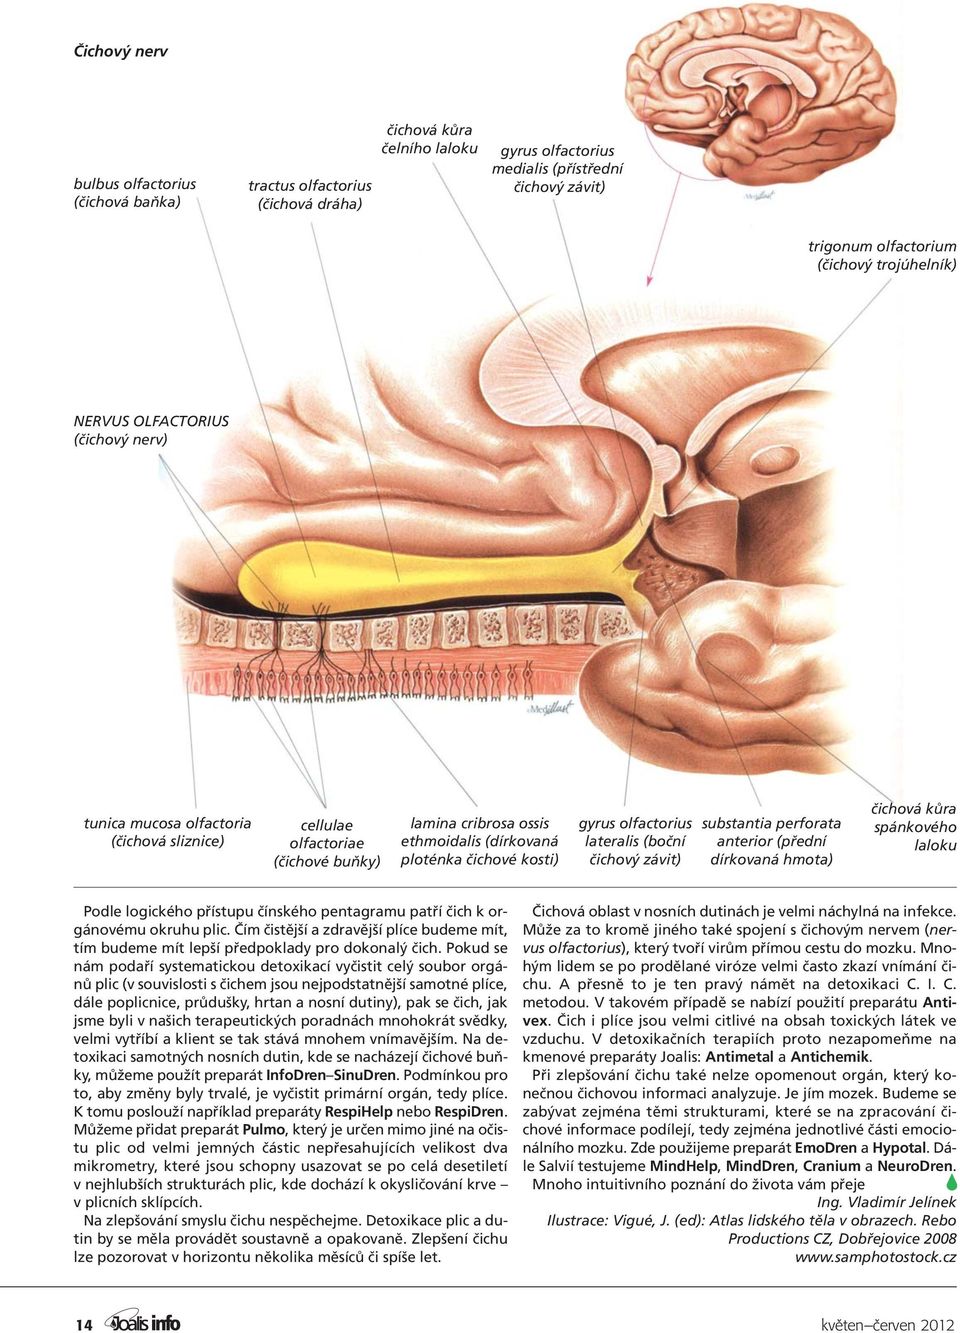 gyrus olfactorius lateralis (boční čichový závit) substantia perforata anterior (přední dírkovaná hmota) čichová kůra spánkového laloku Podle logického přístupu čínského pentagramu patří čich k